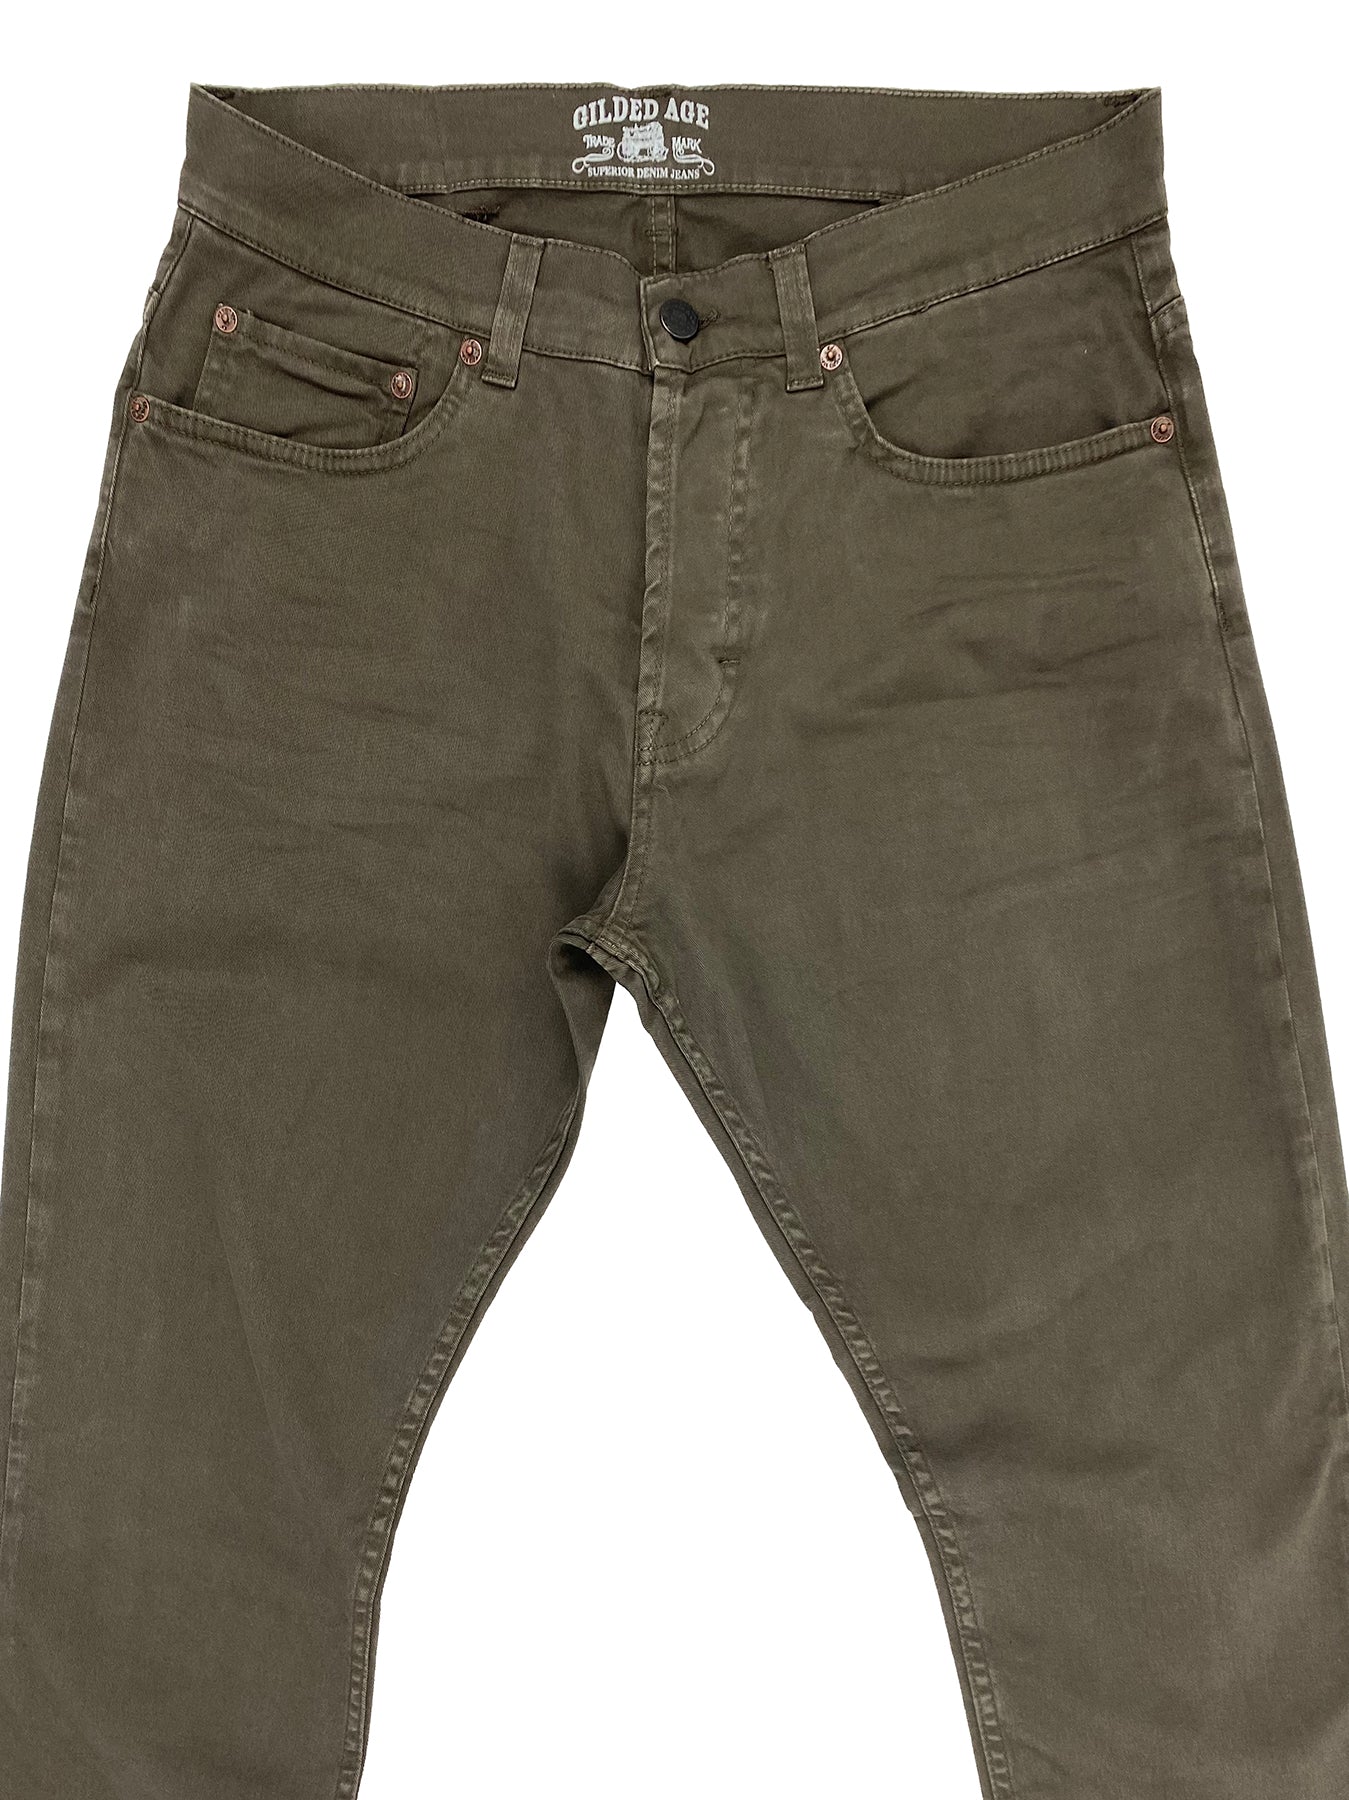 Morrison 5 Pocket Pant 1025 – Gilded Age